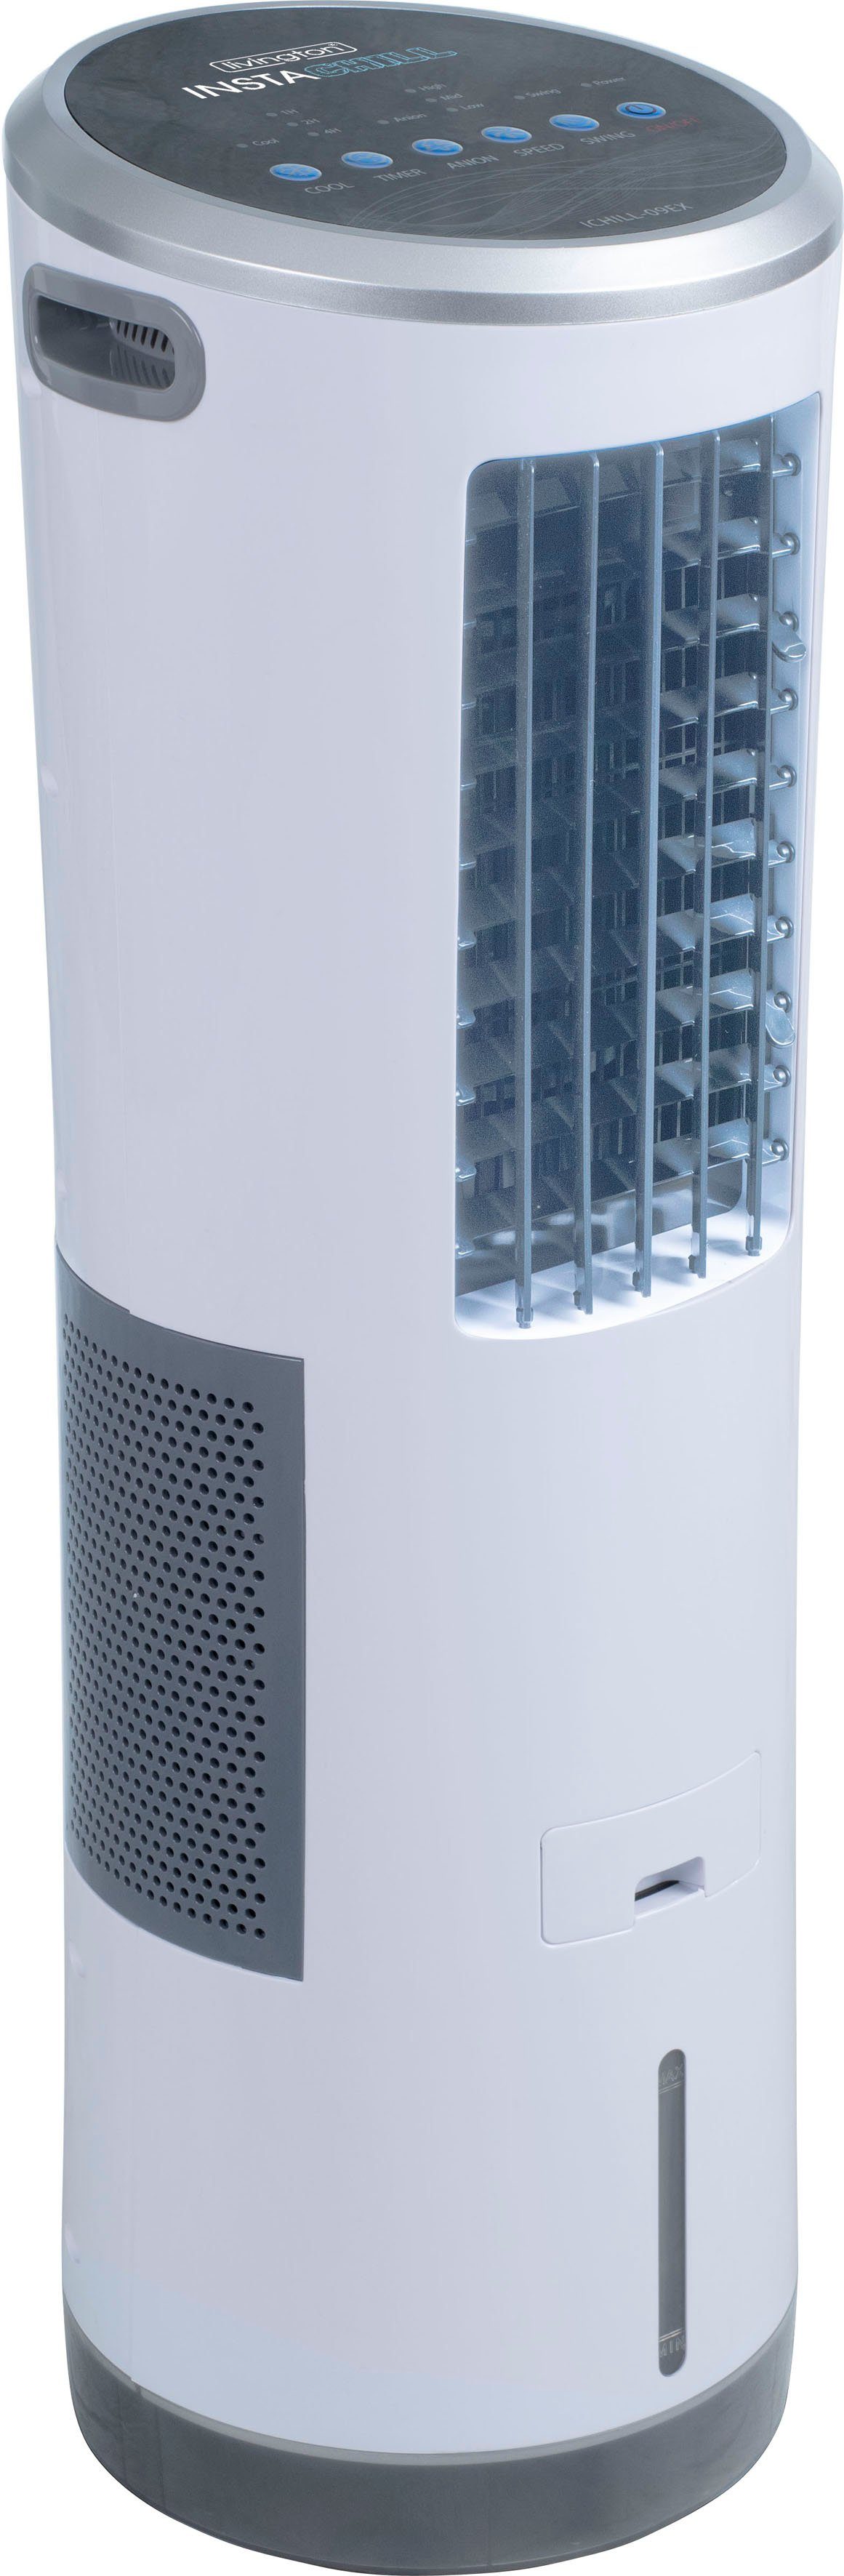 MediaShop Ventilatorkombigerät InstaChill, Luftkühler, 8,5 Fassungsvermögen l